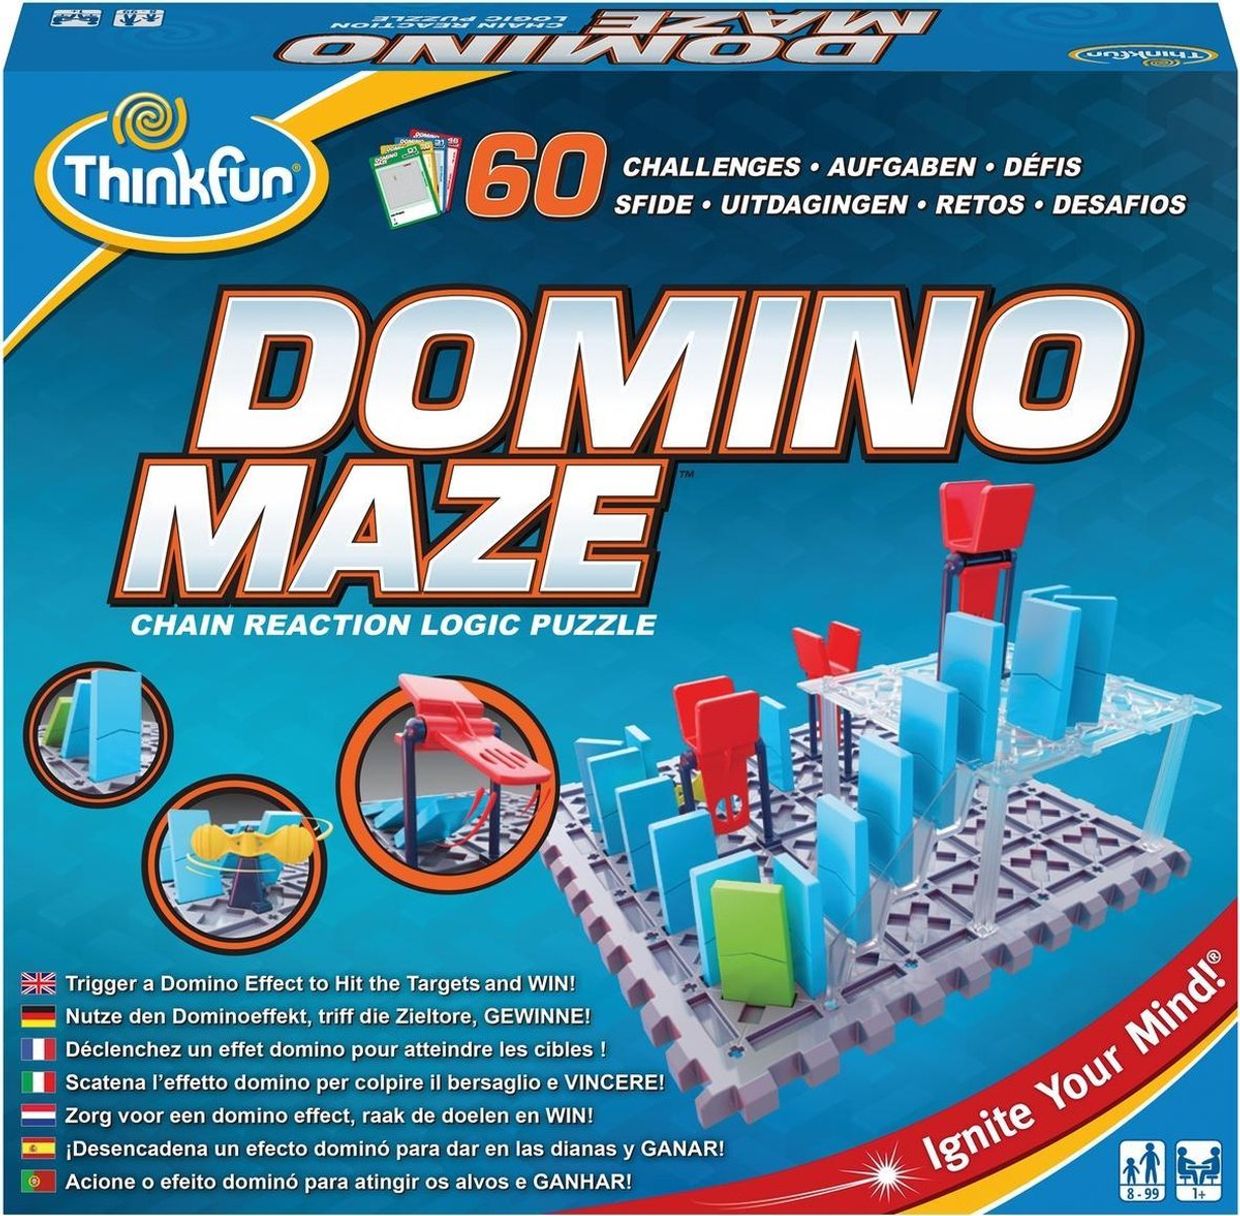 Verloren hart gemeenschap aardolie Domino Maze | Wirwar Spellen en Puzzels | Warenhuis Groningen